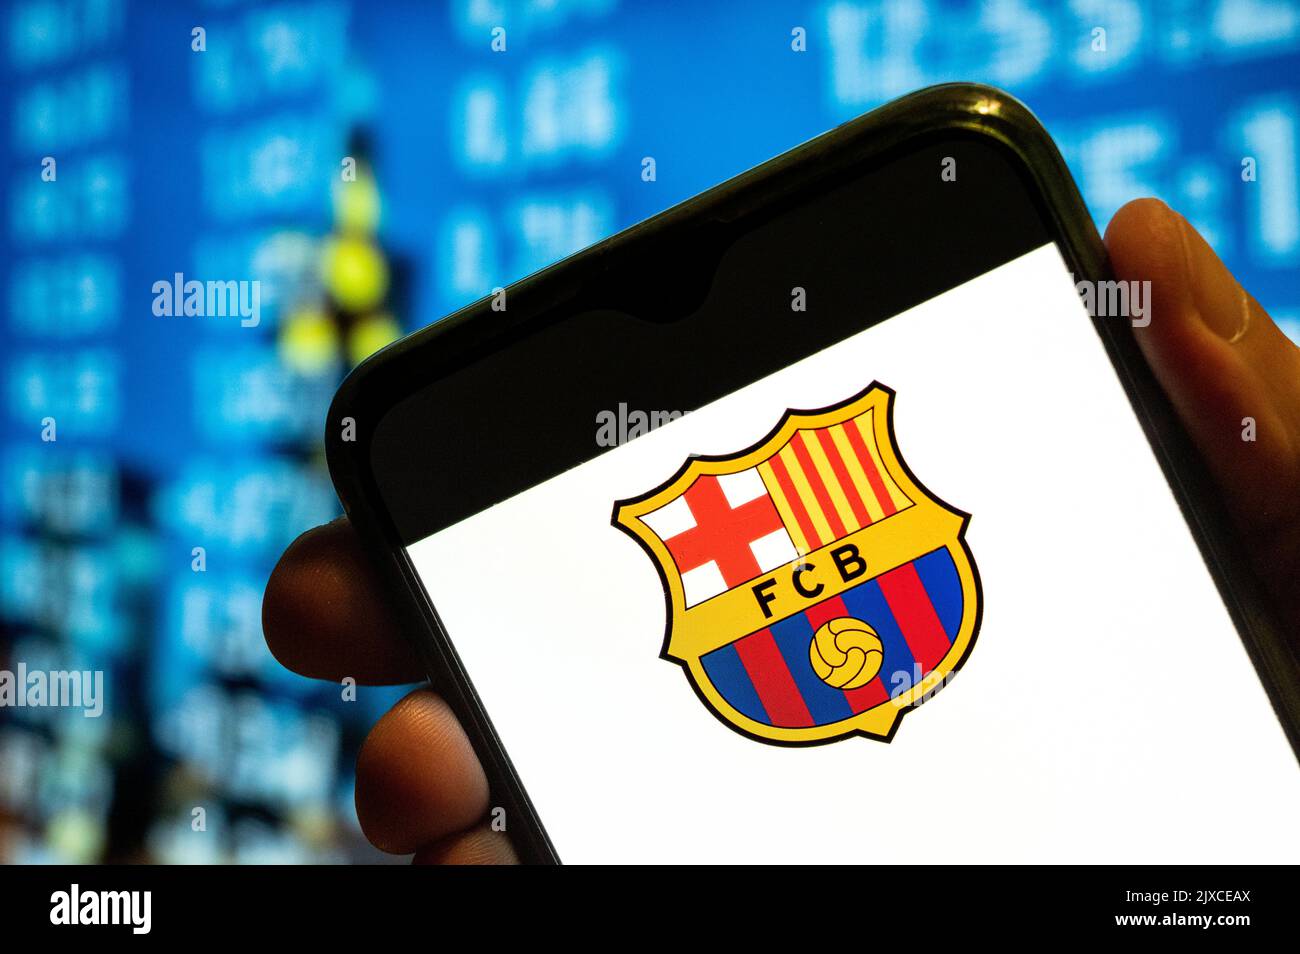 In questa foto, la squadra di calcio professionistica spagnola il logo Futbol Club Barcelona viene visualizzato sullo schermo di uno smartphone. Foto Stock